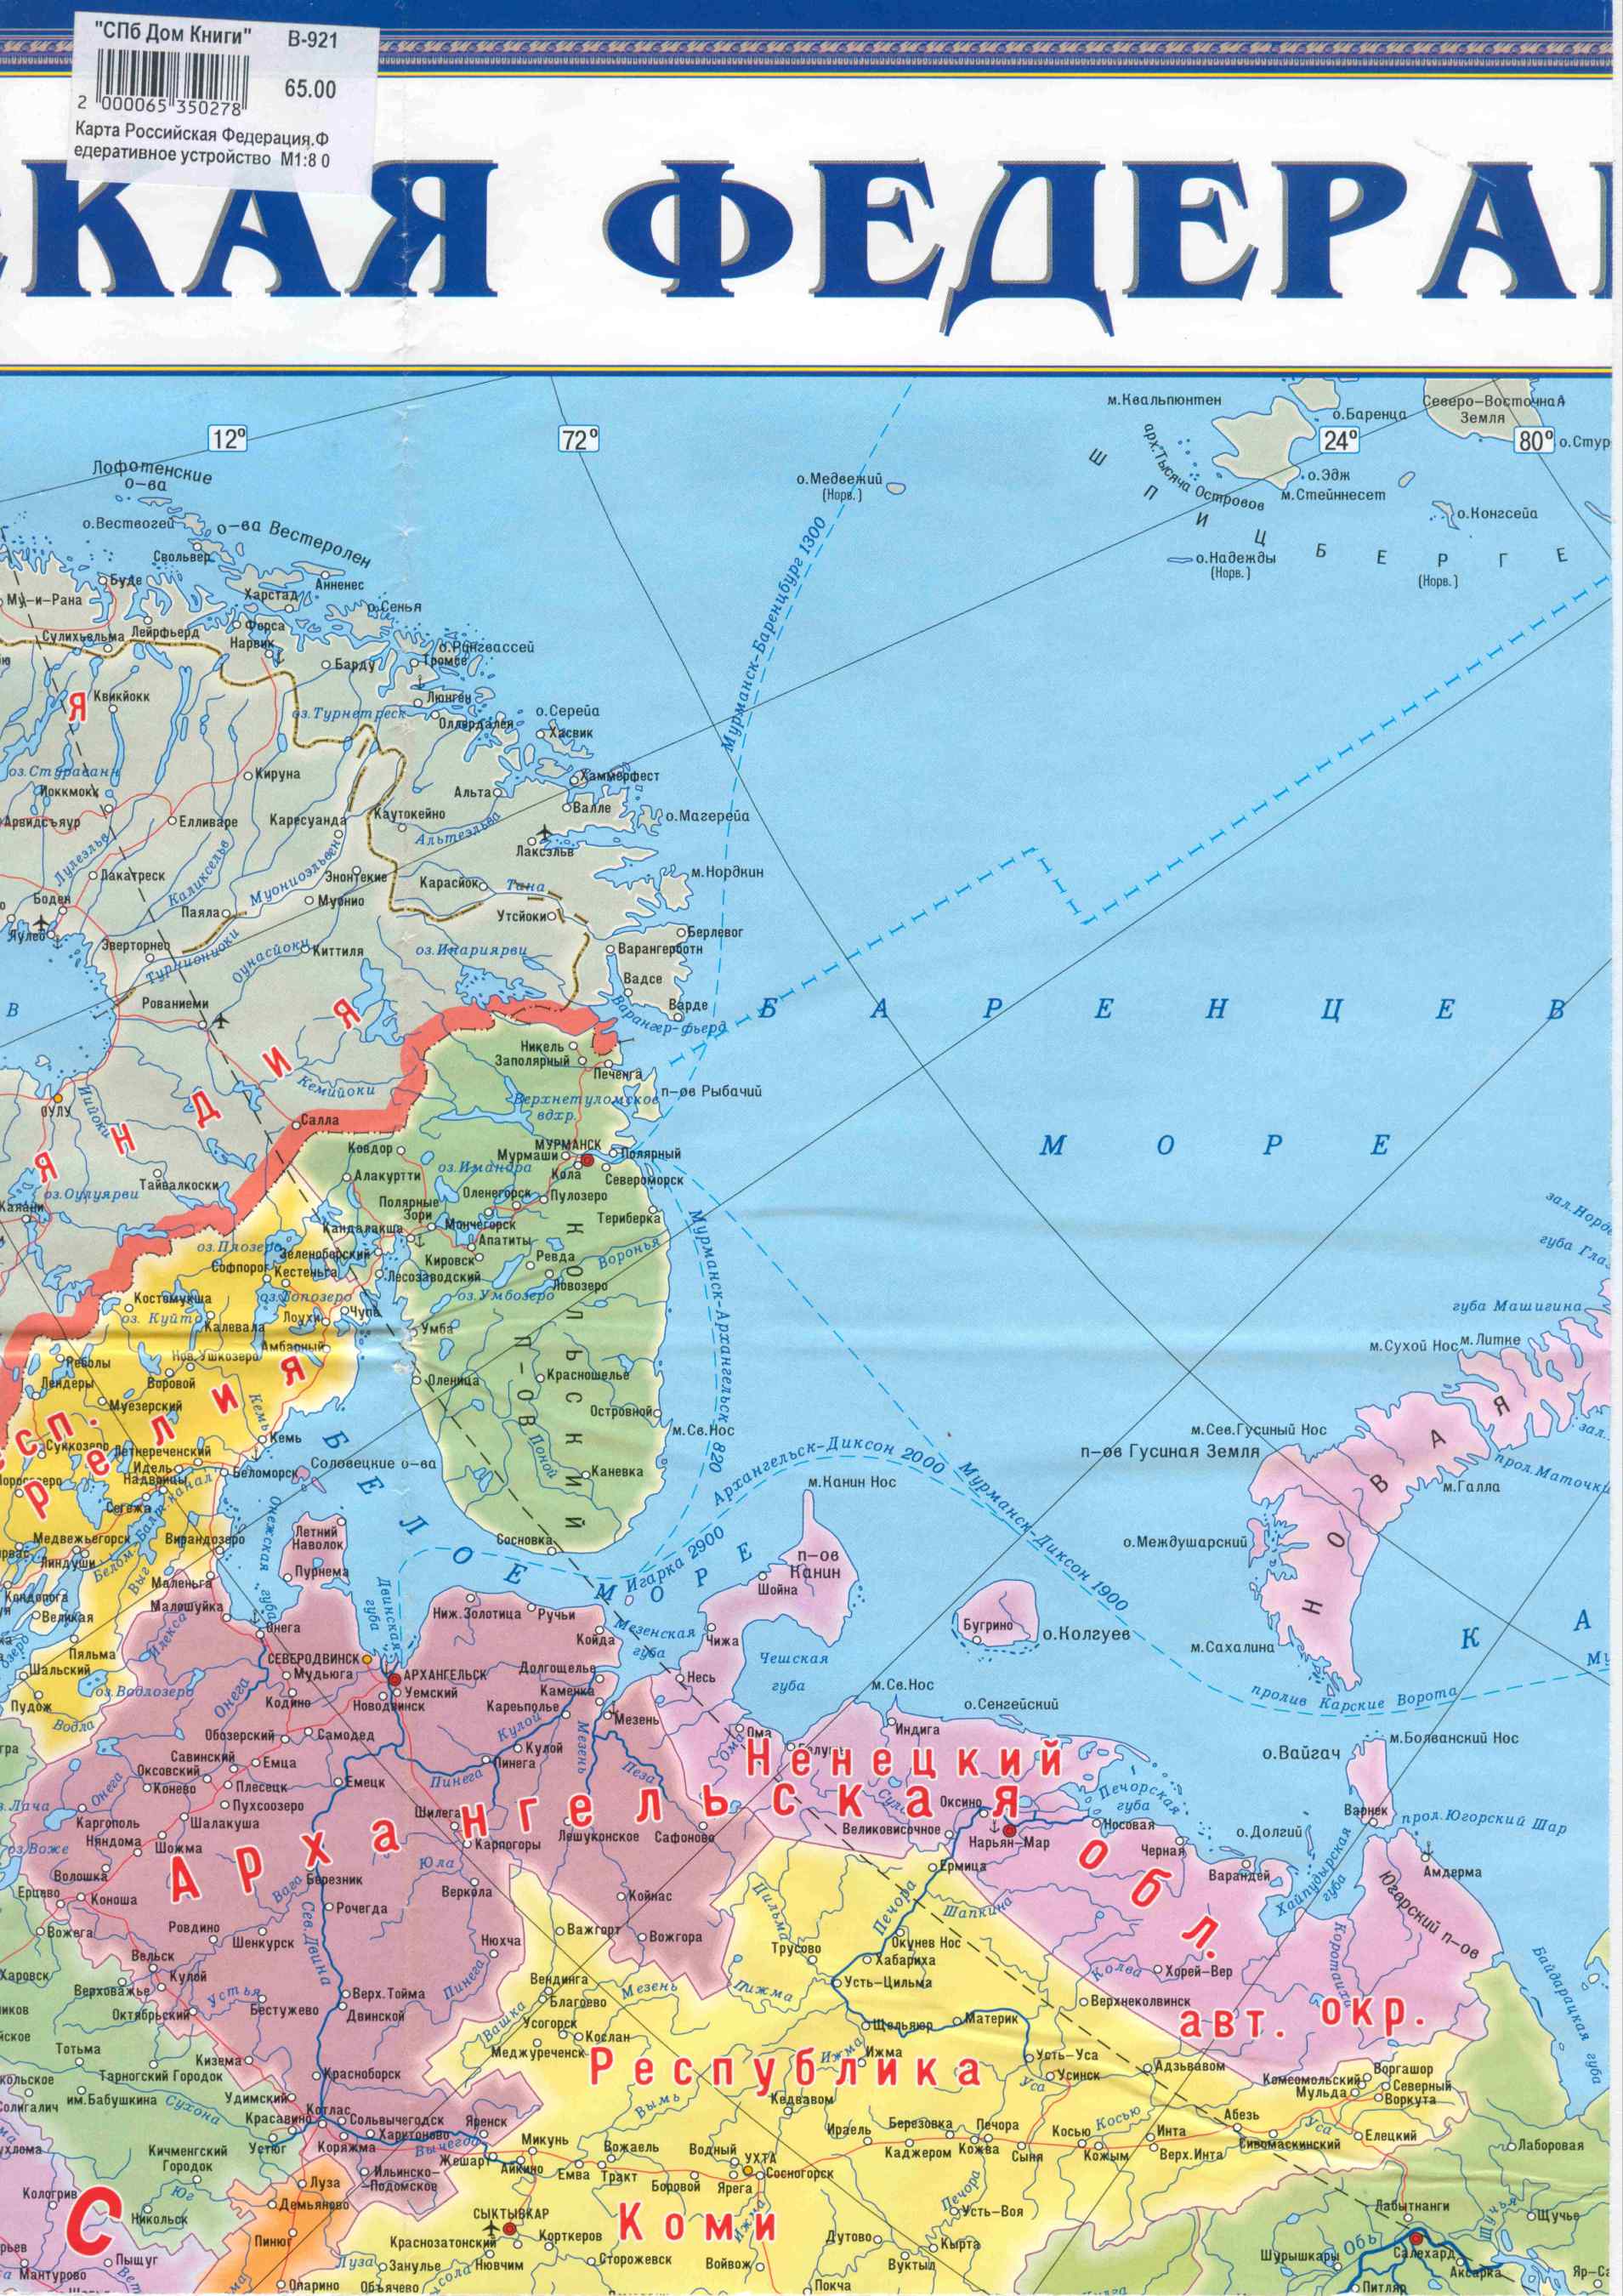 Карта России с областями. Большая подробная карта России. Карта России собластями, республиками и краями, B0 -